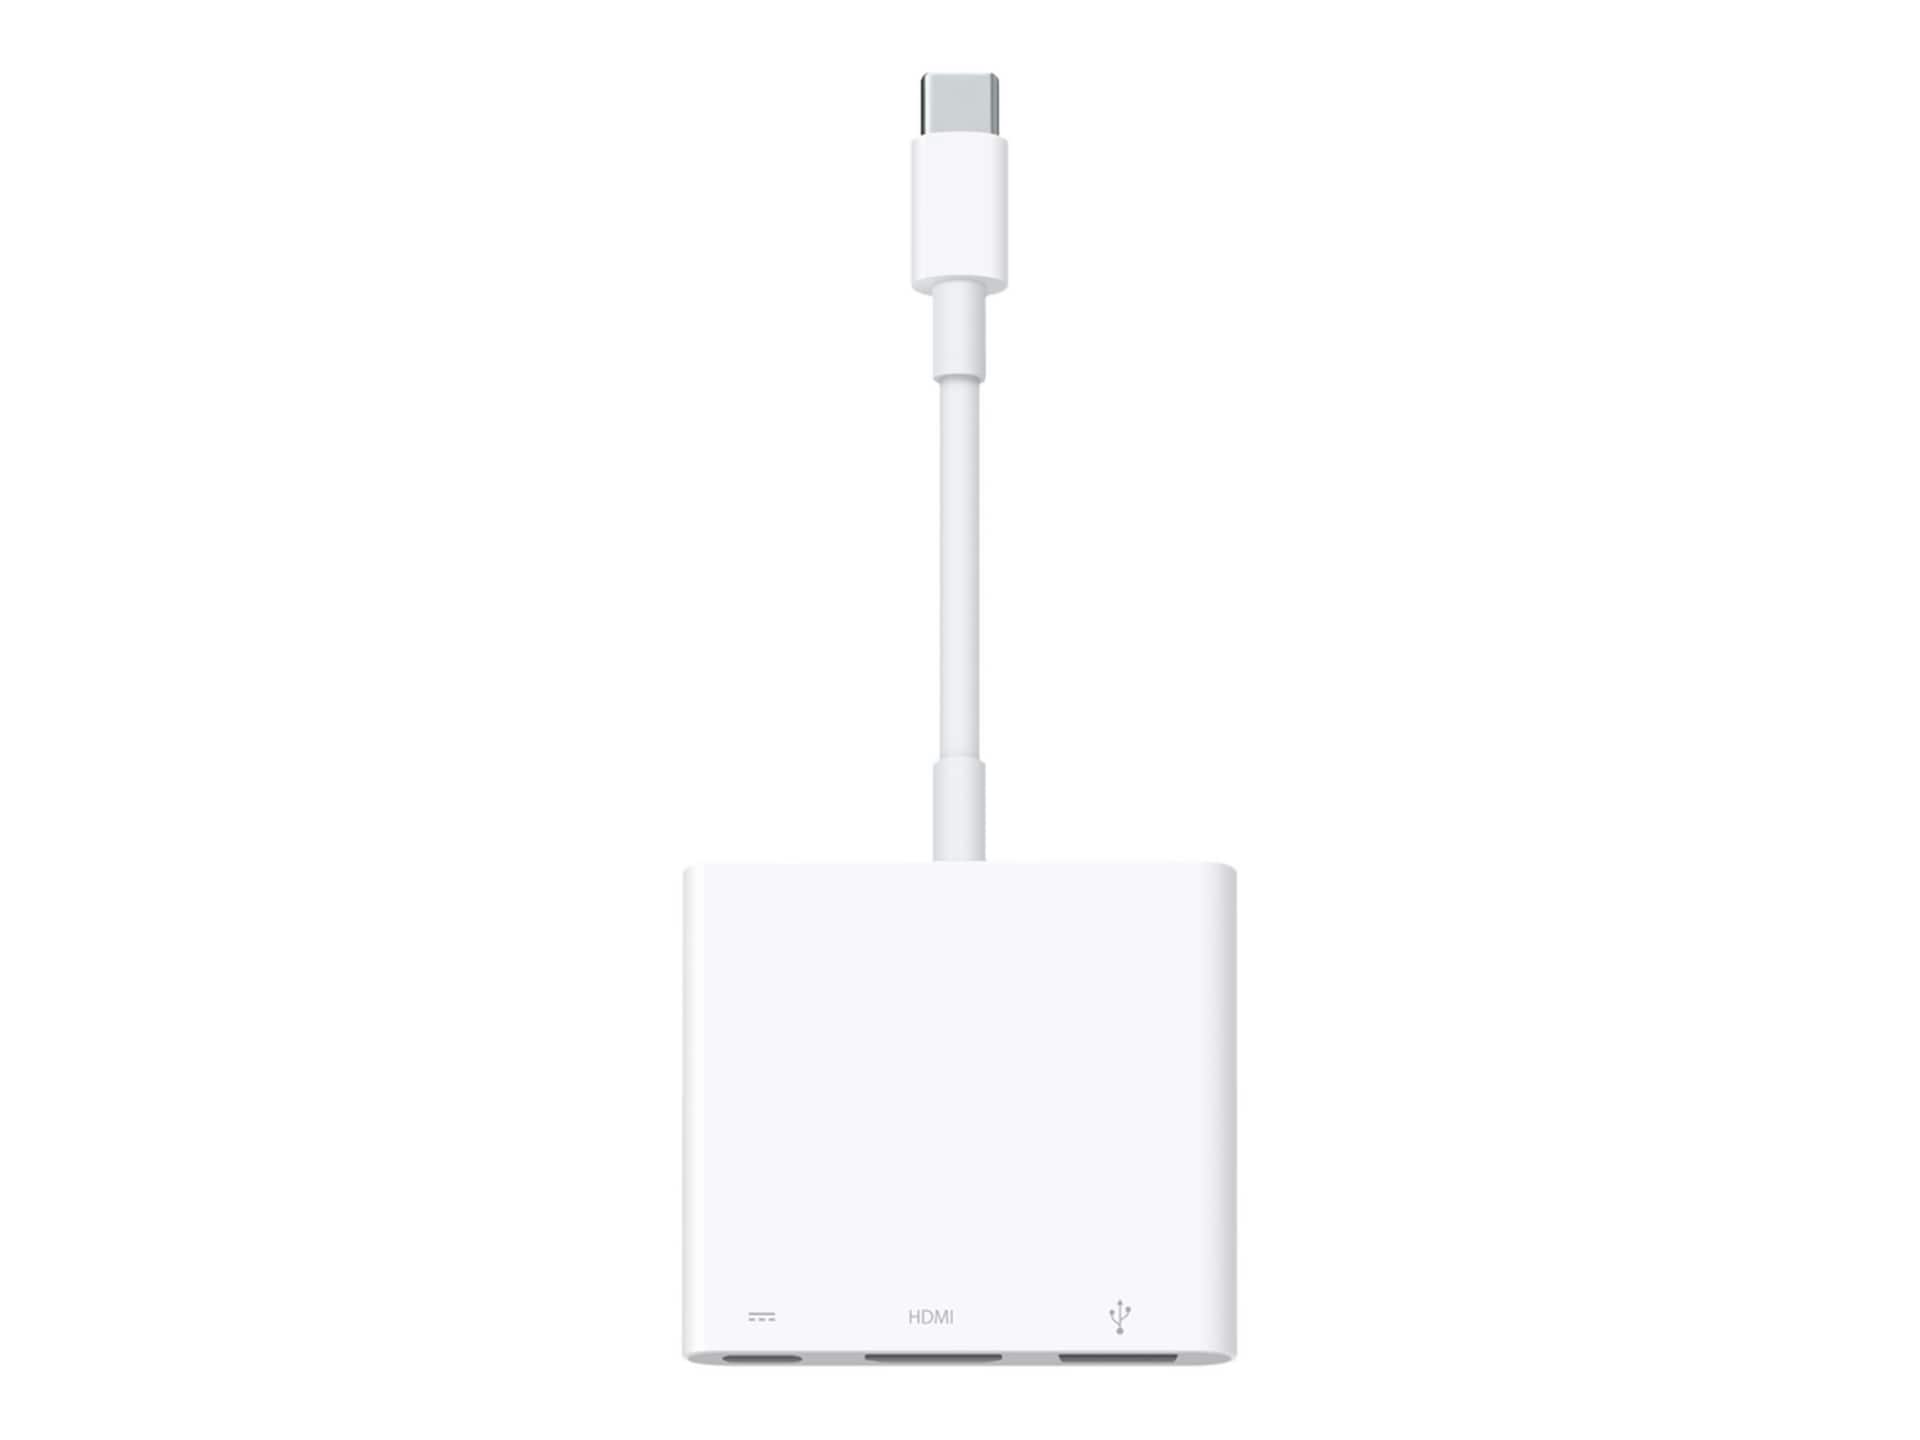 Apple Digital AV Multiport Adapter - adaptateur vidéo - HDMI / USB